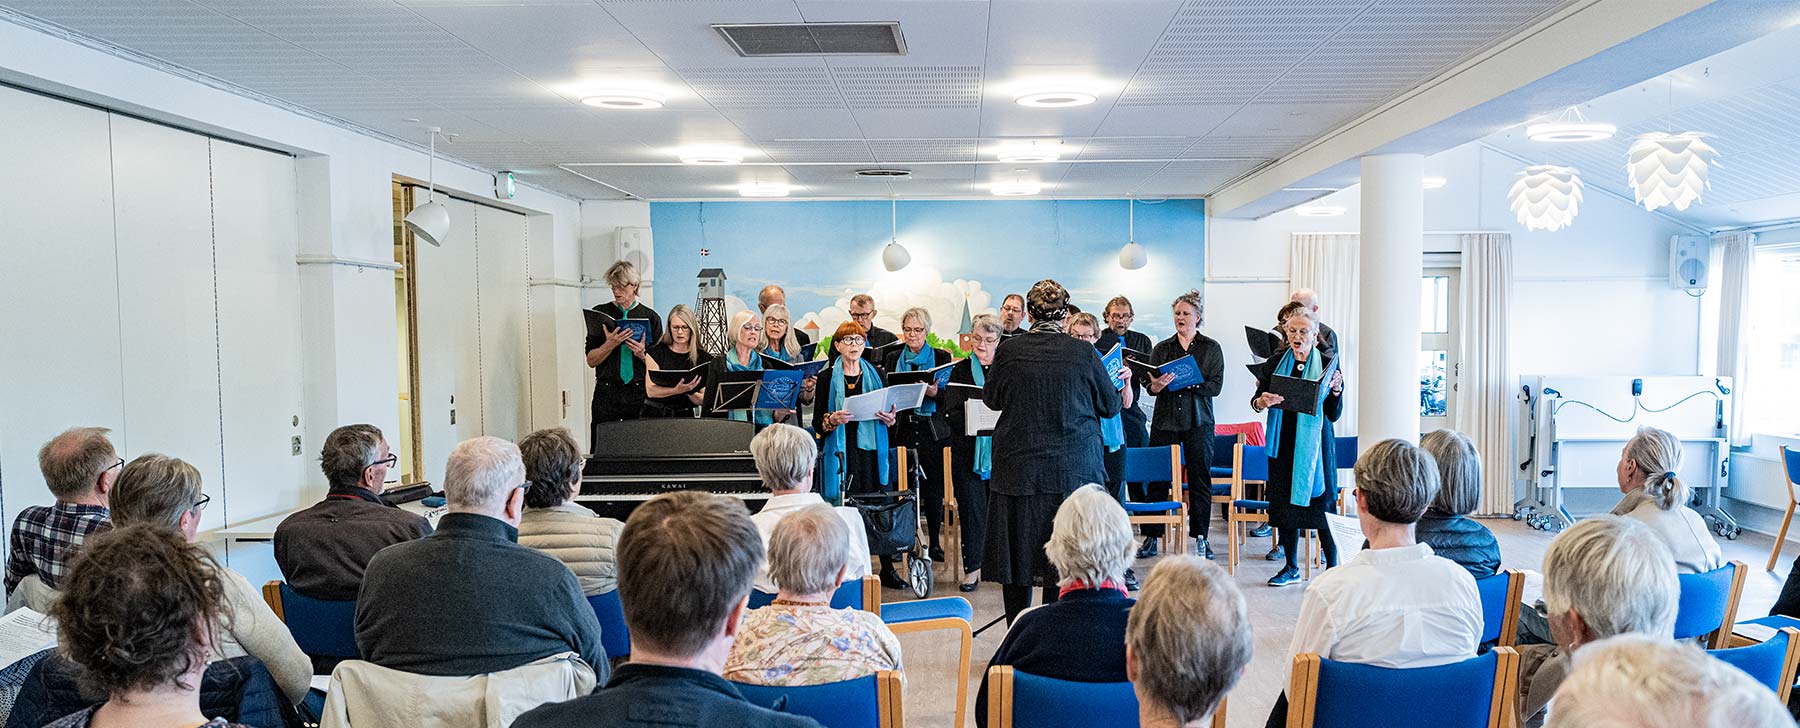 Mandag den 23. maj sluttede Dragørkoret forårssæsonen med en velbesøgt koncert i Wiedergården, hvor der blev sunget danske og svenske sange og viser. Foto: TorbenStender.